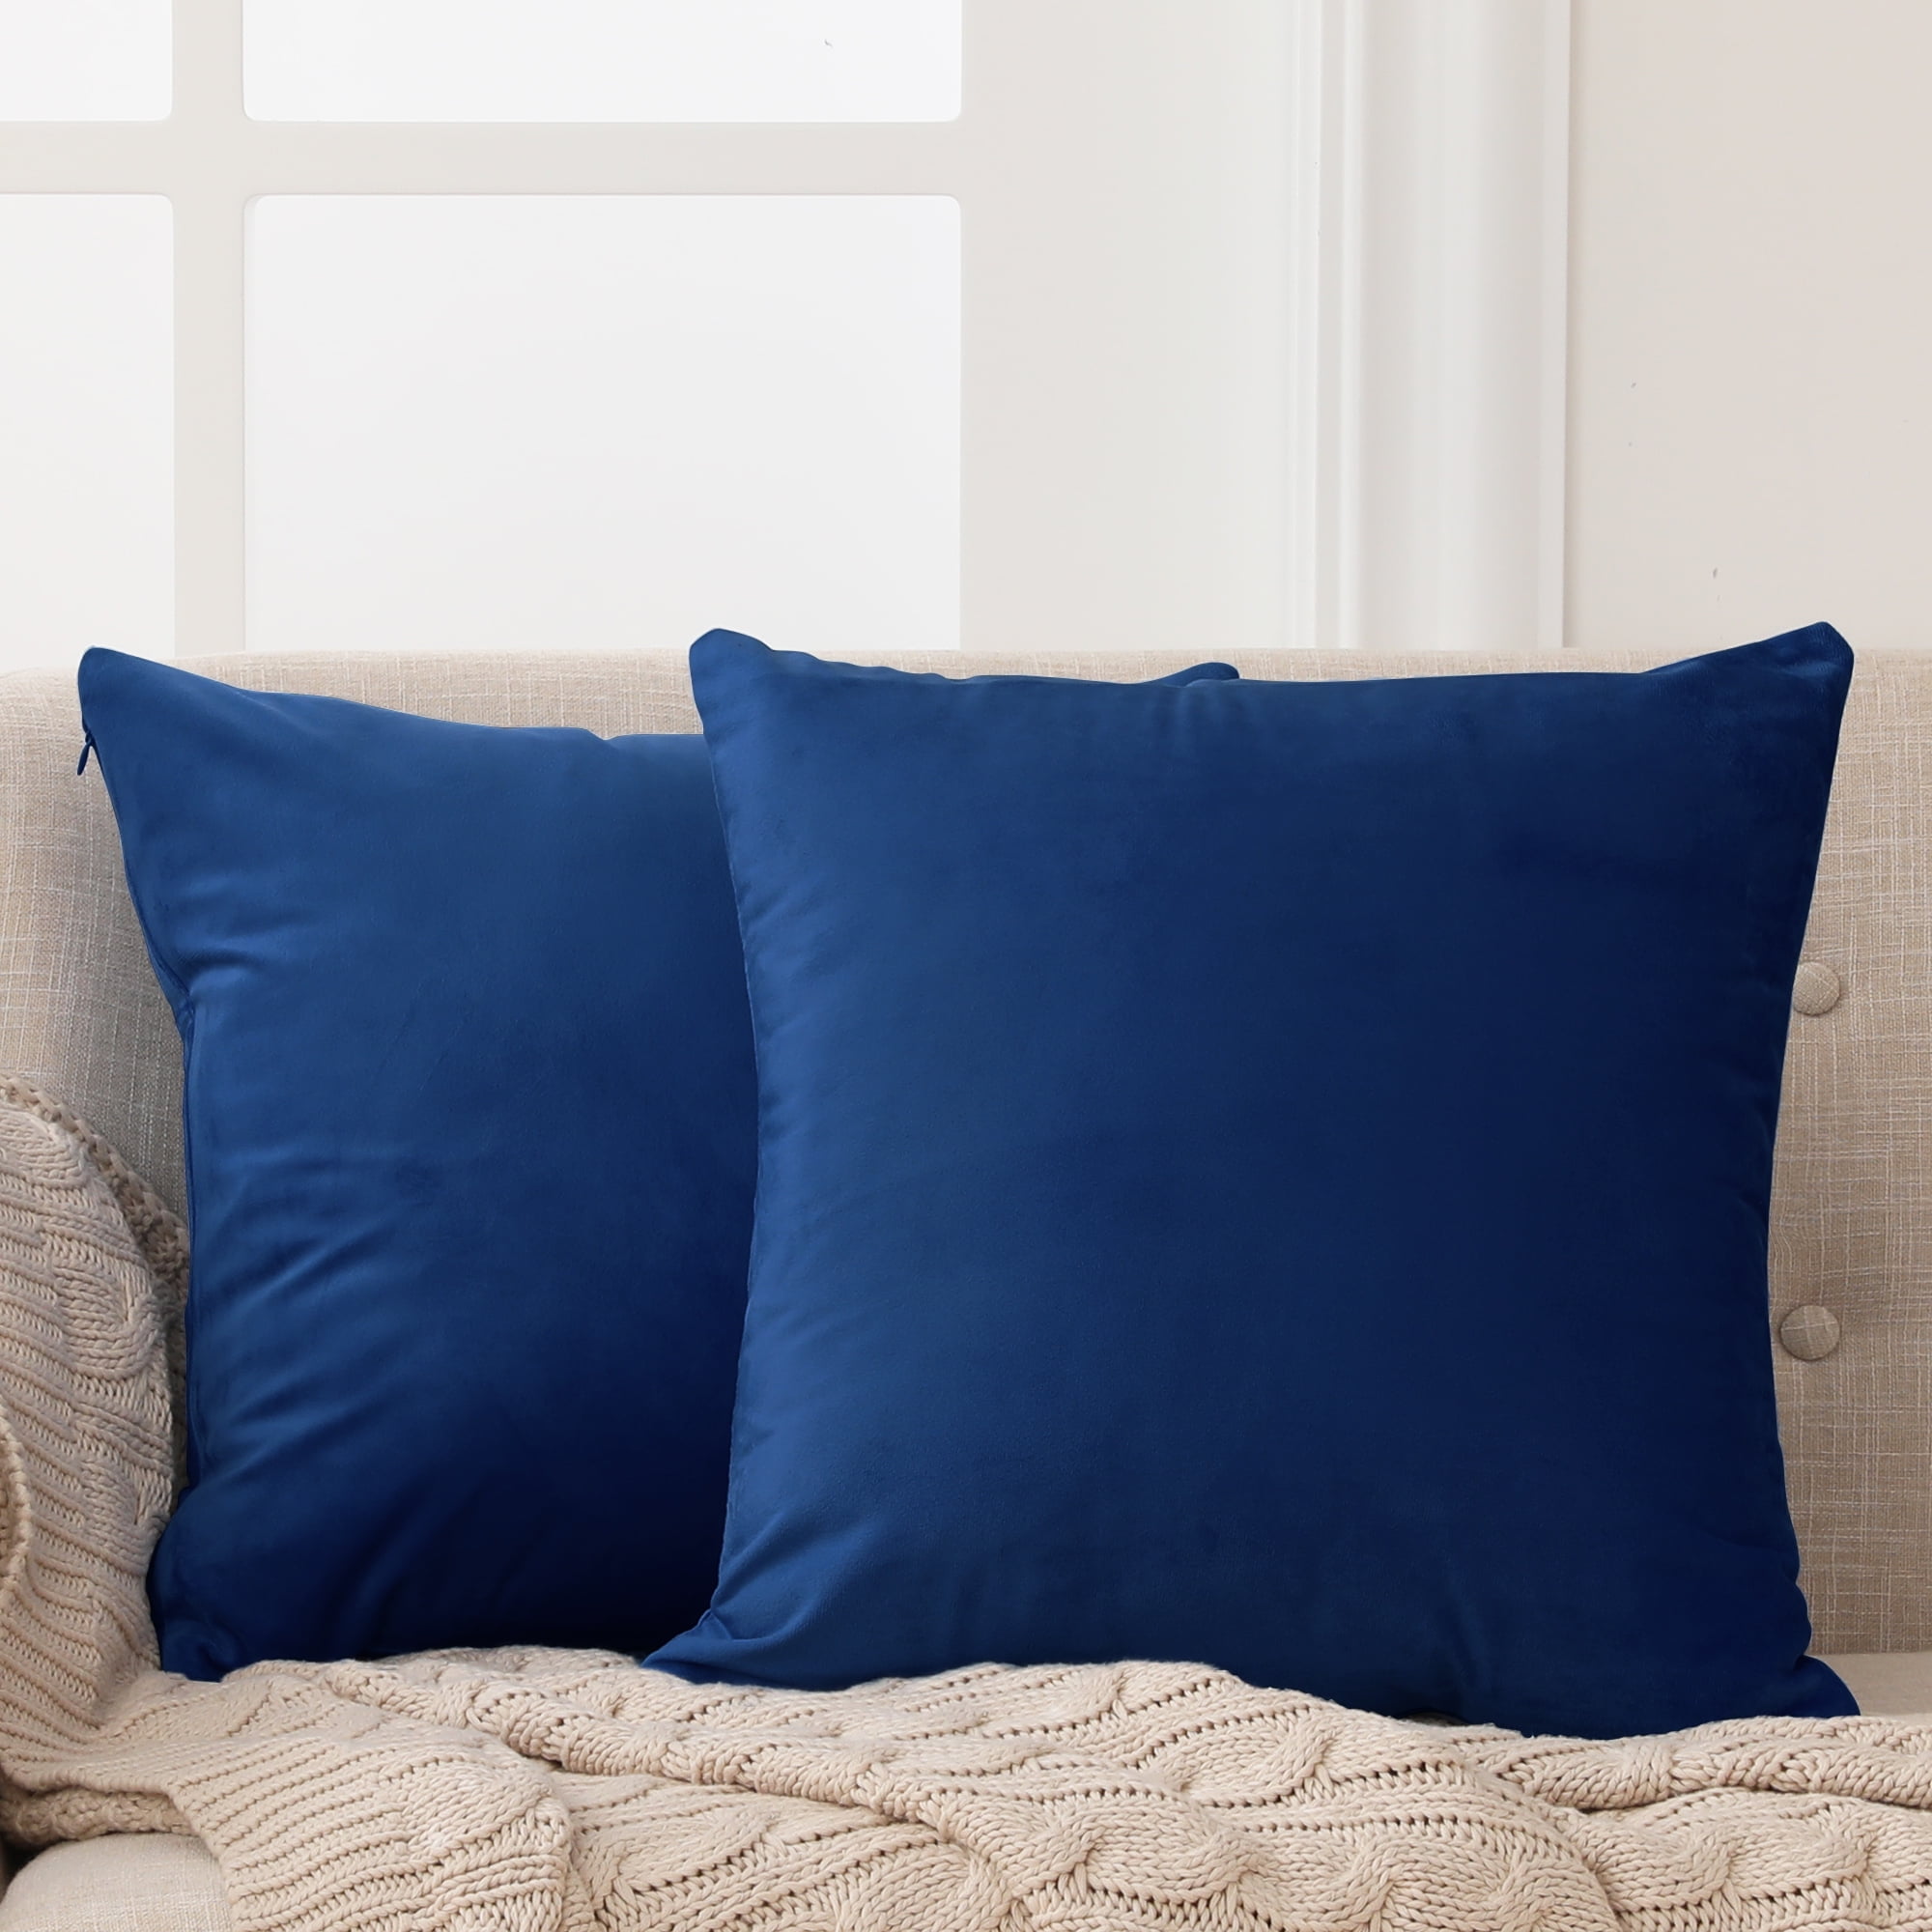 Cotton Pillow Case Premium Home Decor Soft Bed Sofa Vintage Cushion Cover 20x28" 